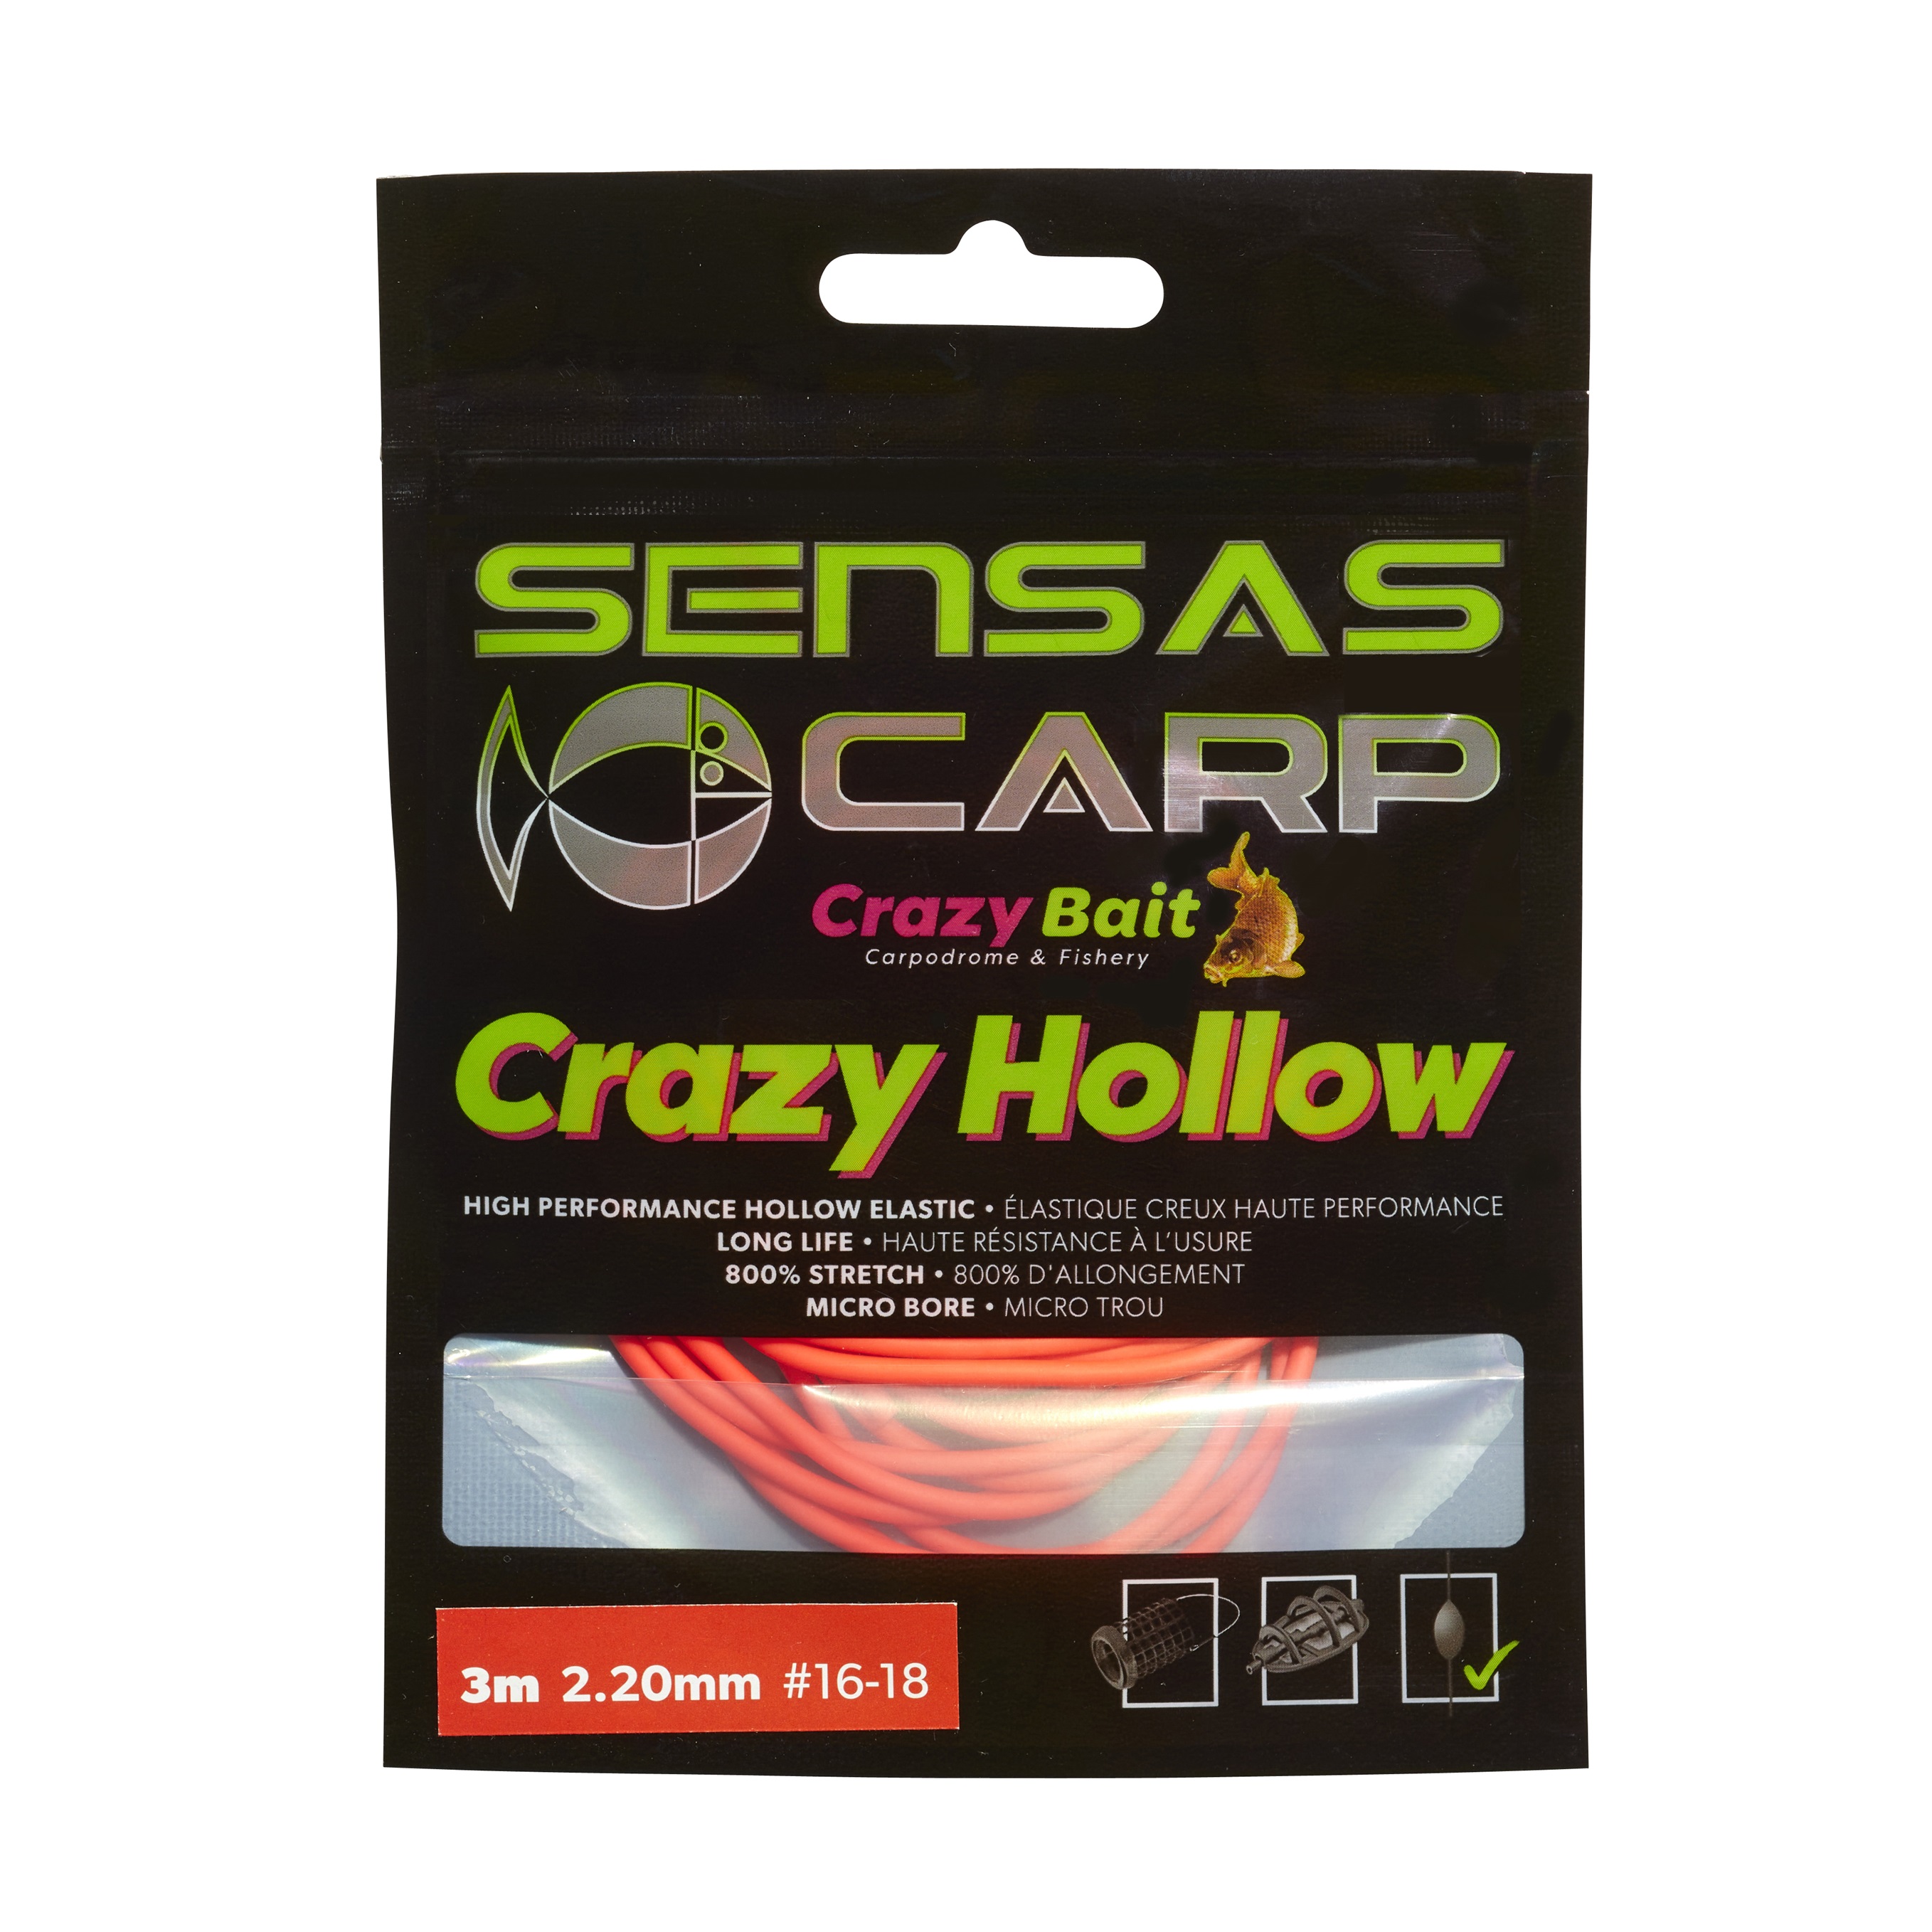 Sensas Crazy Hol. Amortyzator Soft 800% (5m)